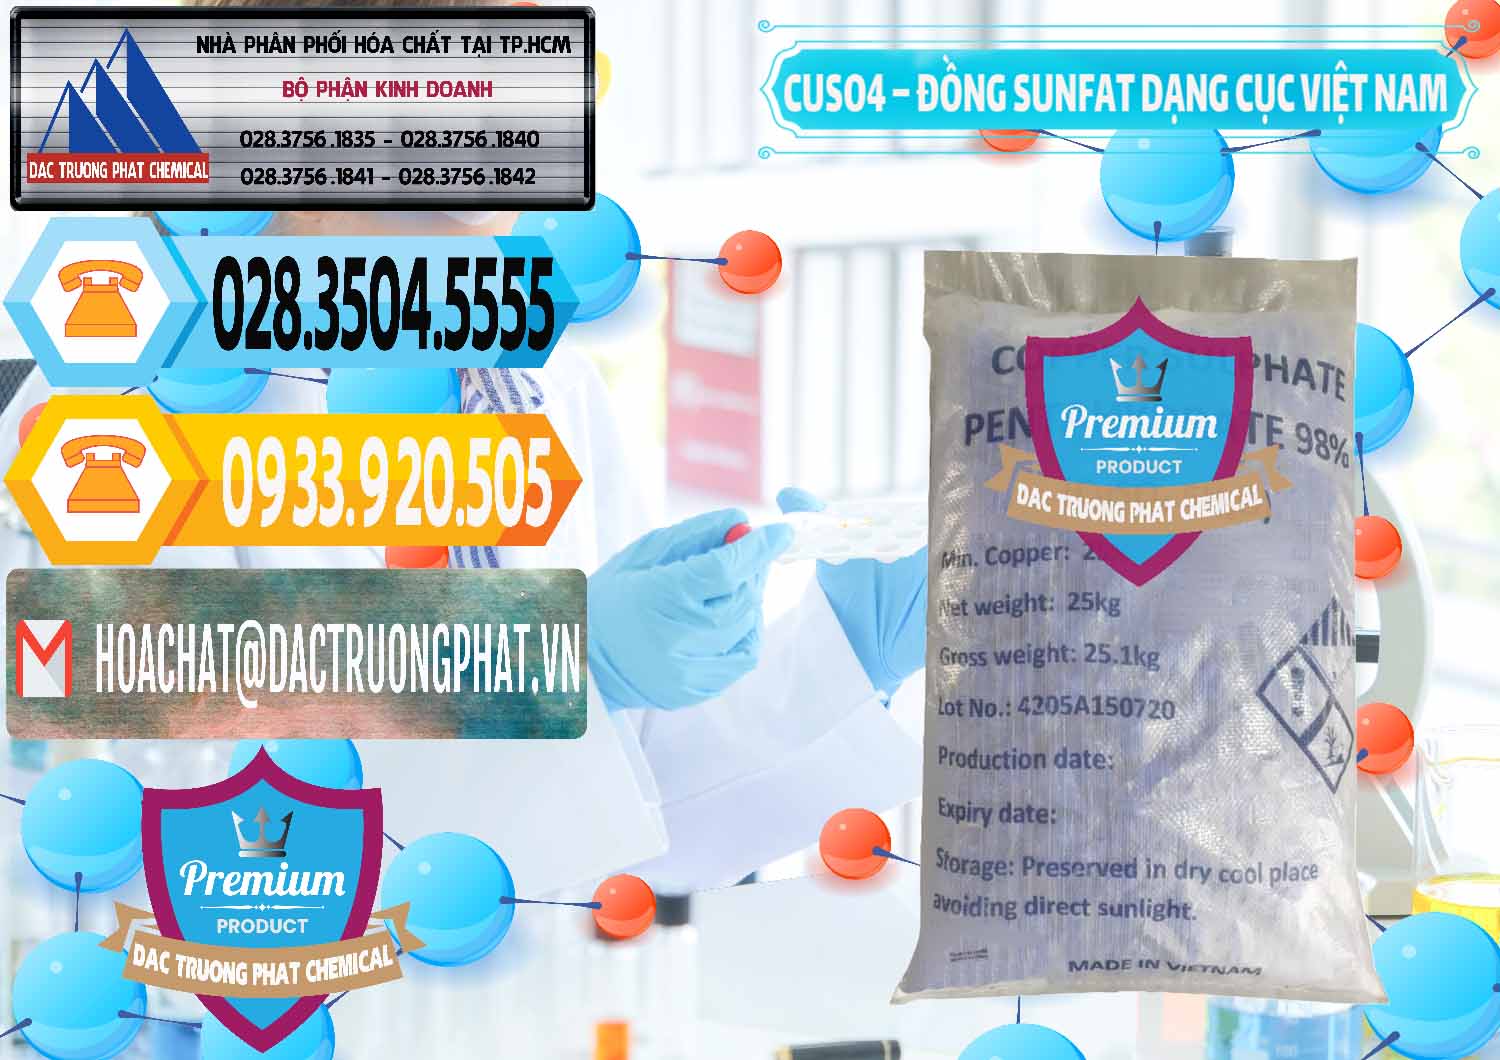 Cty chuyên kinh doanh ( bán ) CUSO4 – Đồng Sunfat Dạng Cục Việt Nam - 0303 - Công ty chuyên bán - cung cấp hóa chất tại TP.HCM - hoachattayrua.net